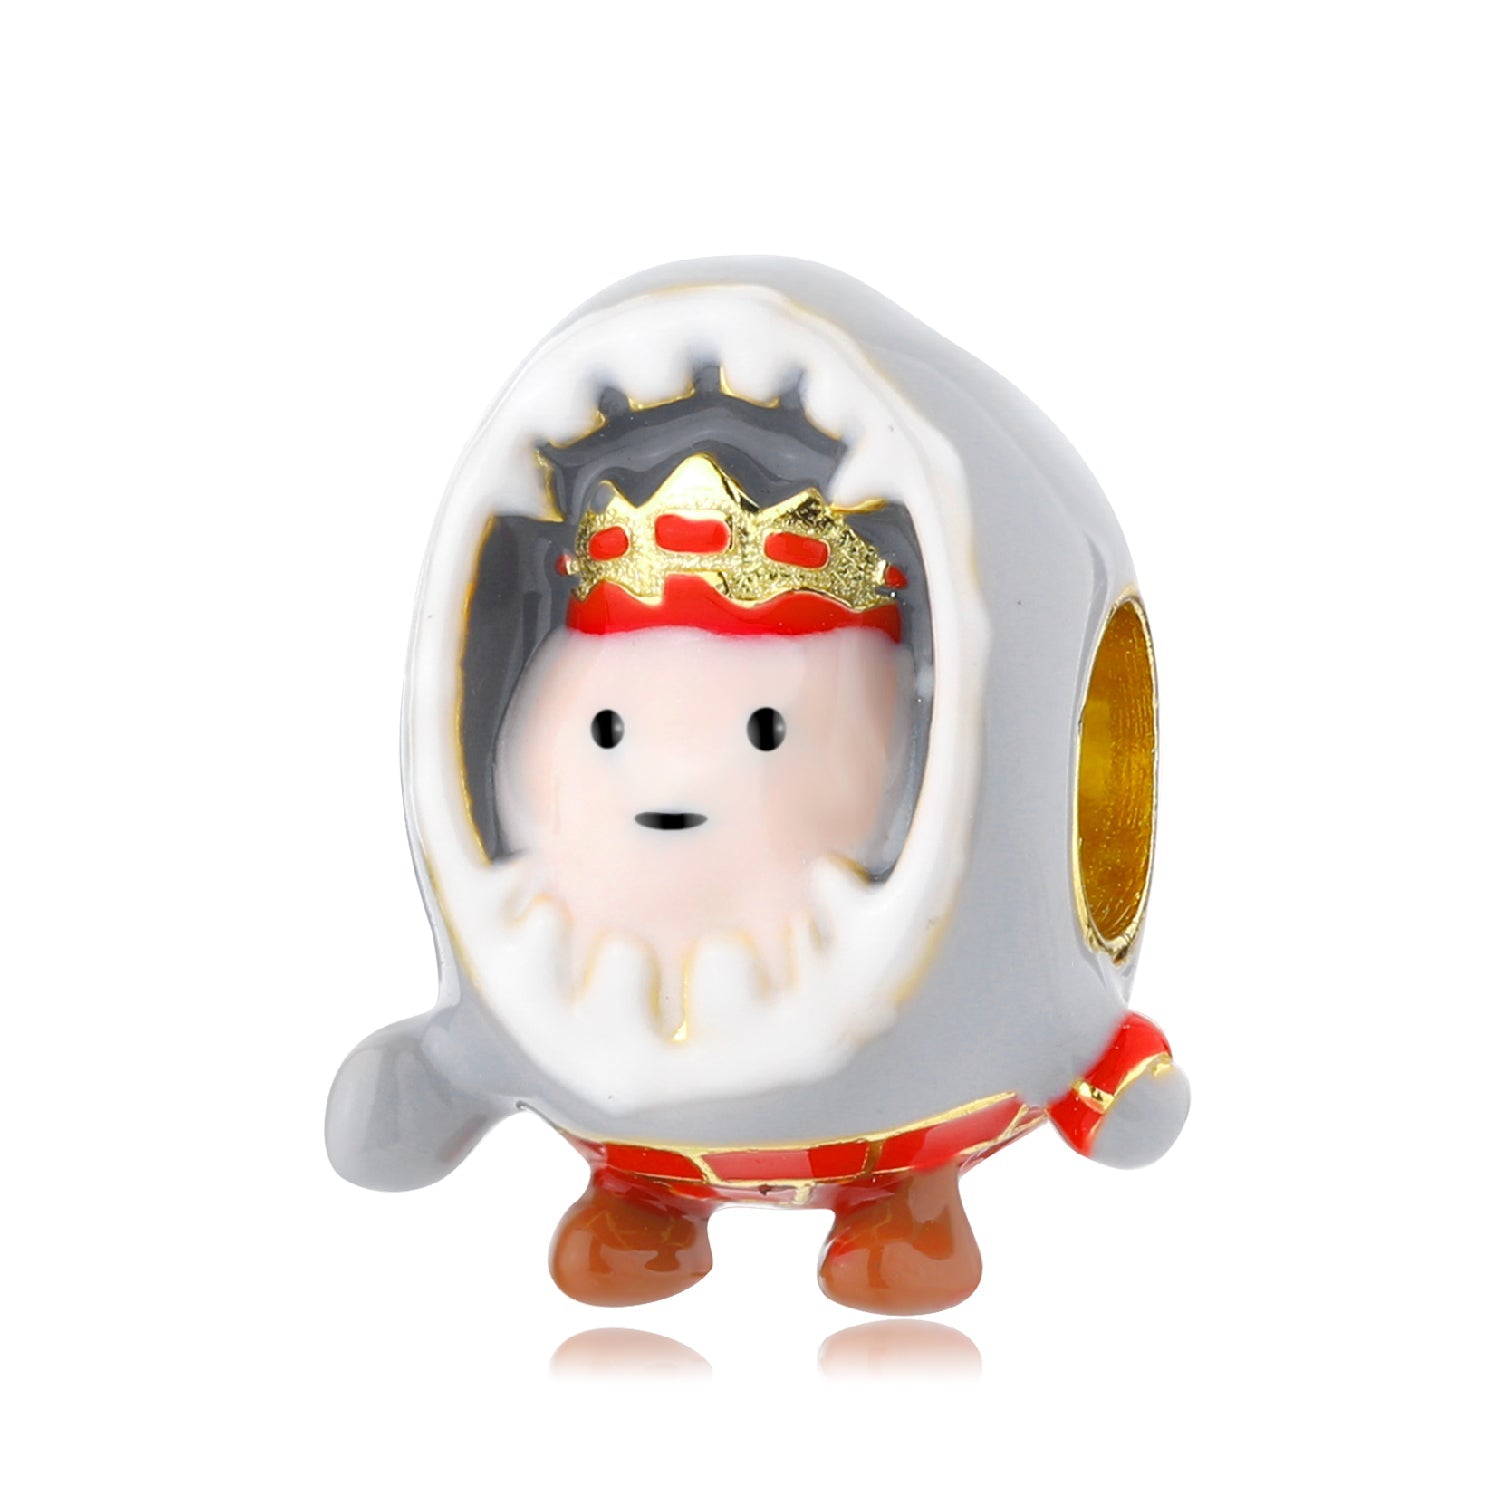 Prince egg